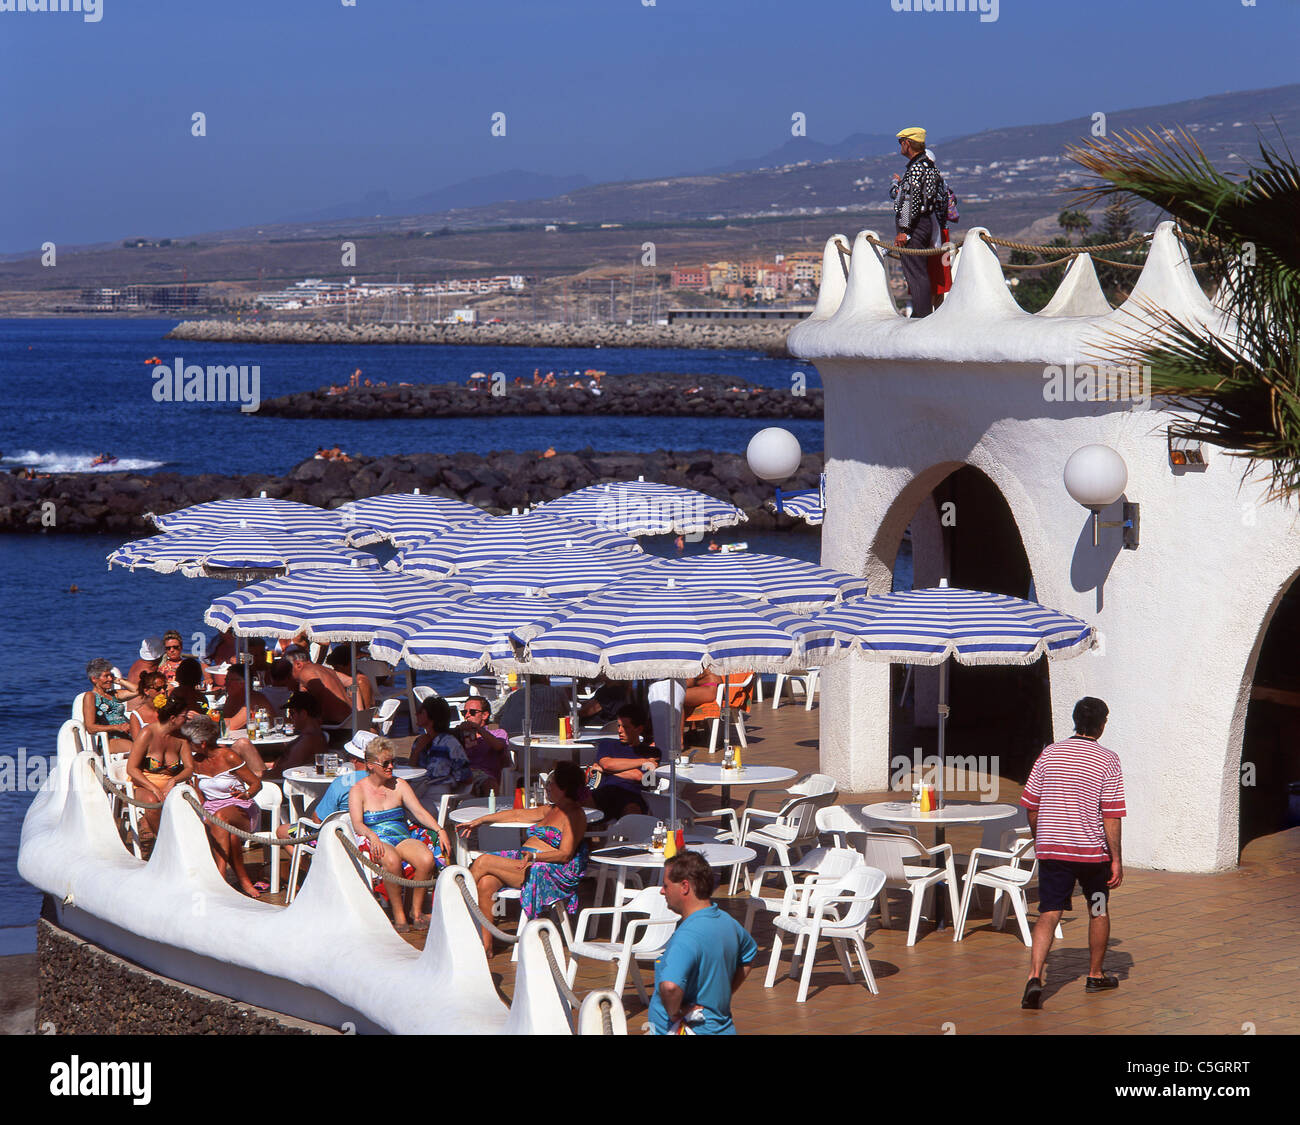 Beach restaurant playa cuevitas fotografías e imágenes de alta - Alamy